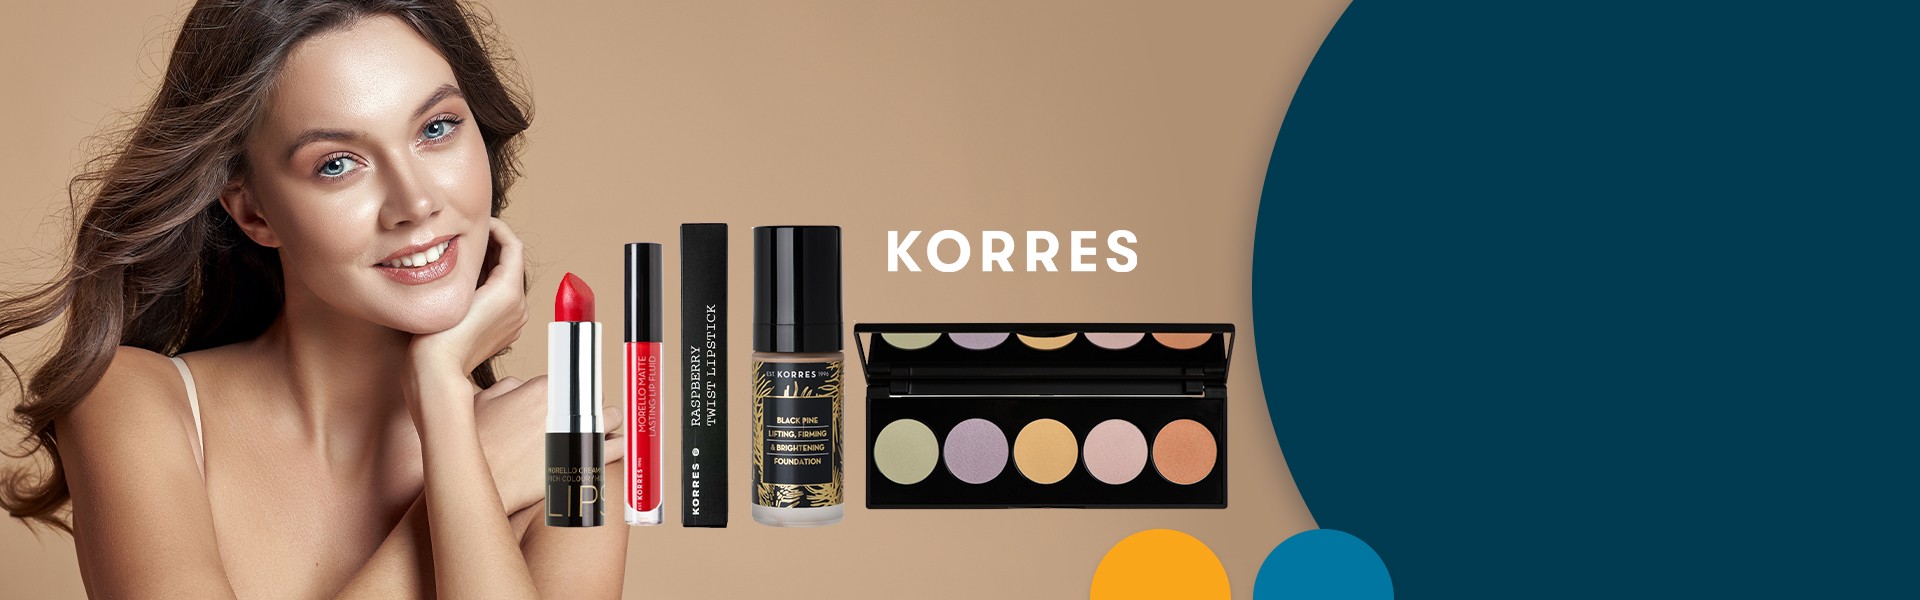 Προϊόντα μακιγιάζ Korres